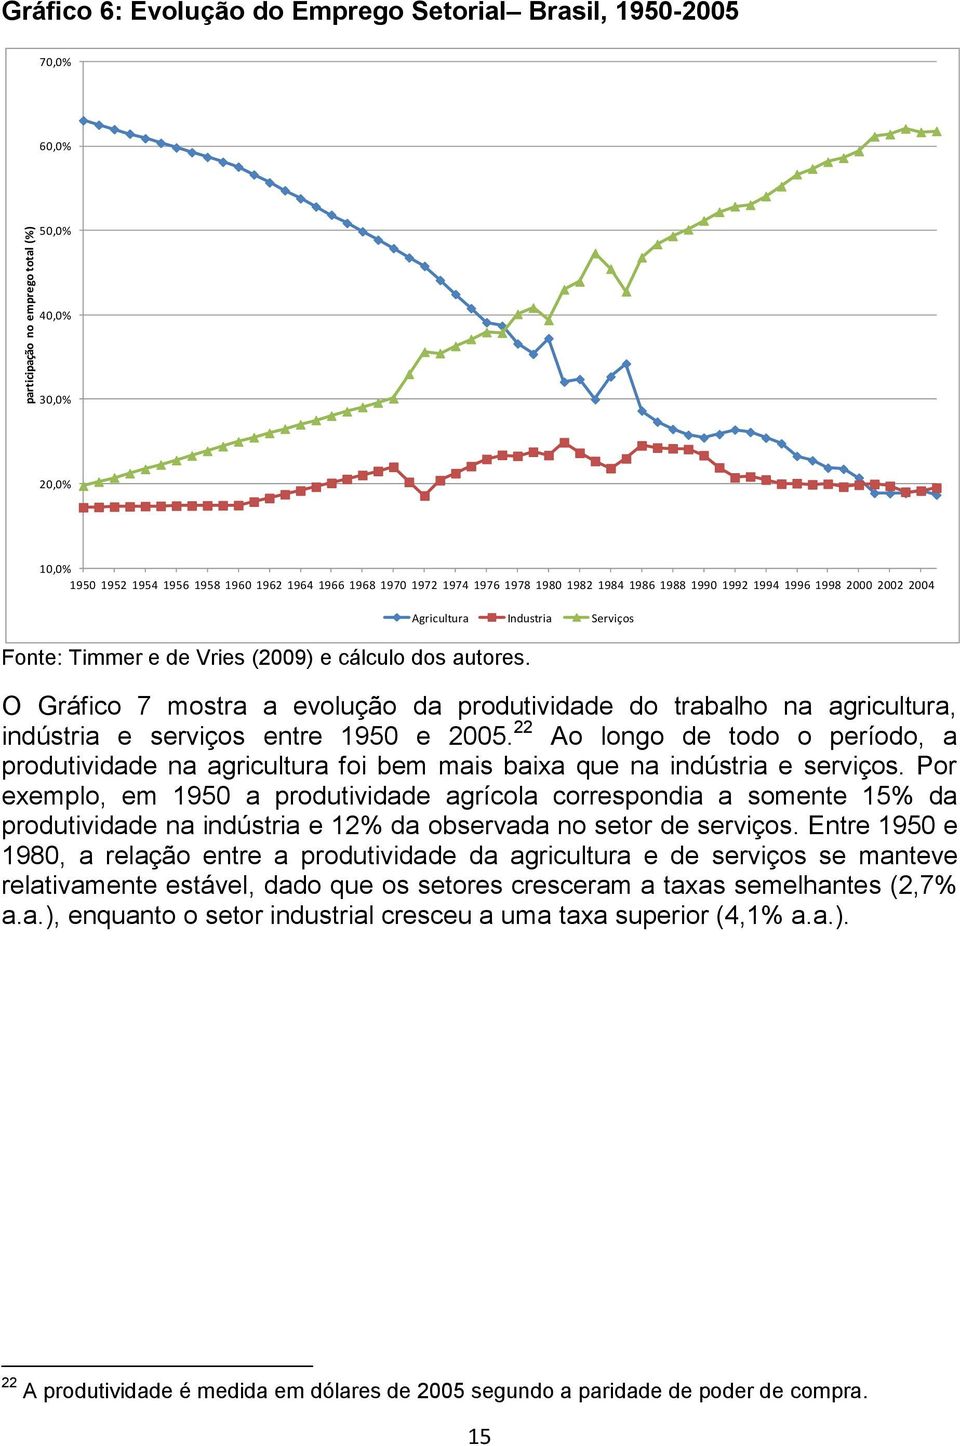 O Gráfico 7 mostra a evolução da produtividade do trabalho na agricultura, indústria e serviços entre 1950 e 2005.